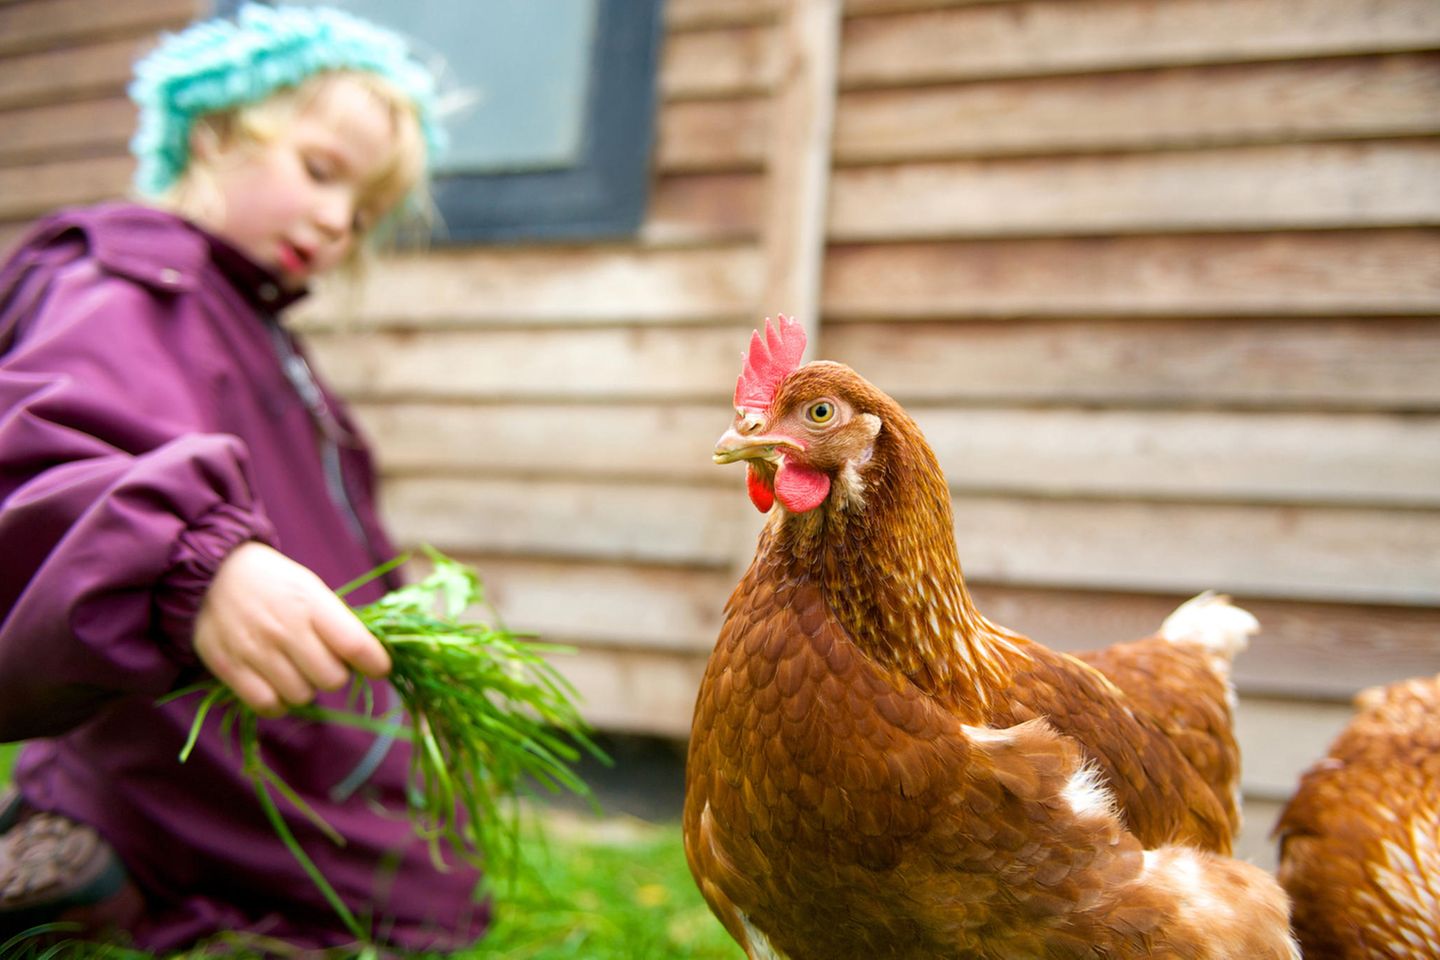 Huhn, im Hintergrund ist ein Mädchen, hält dem Huhn Gras hin